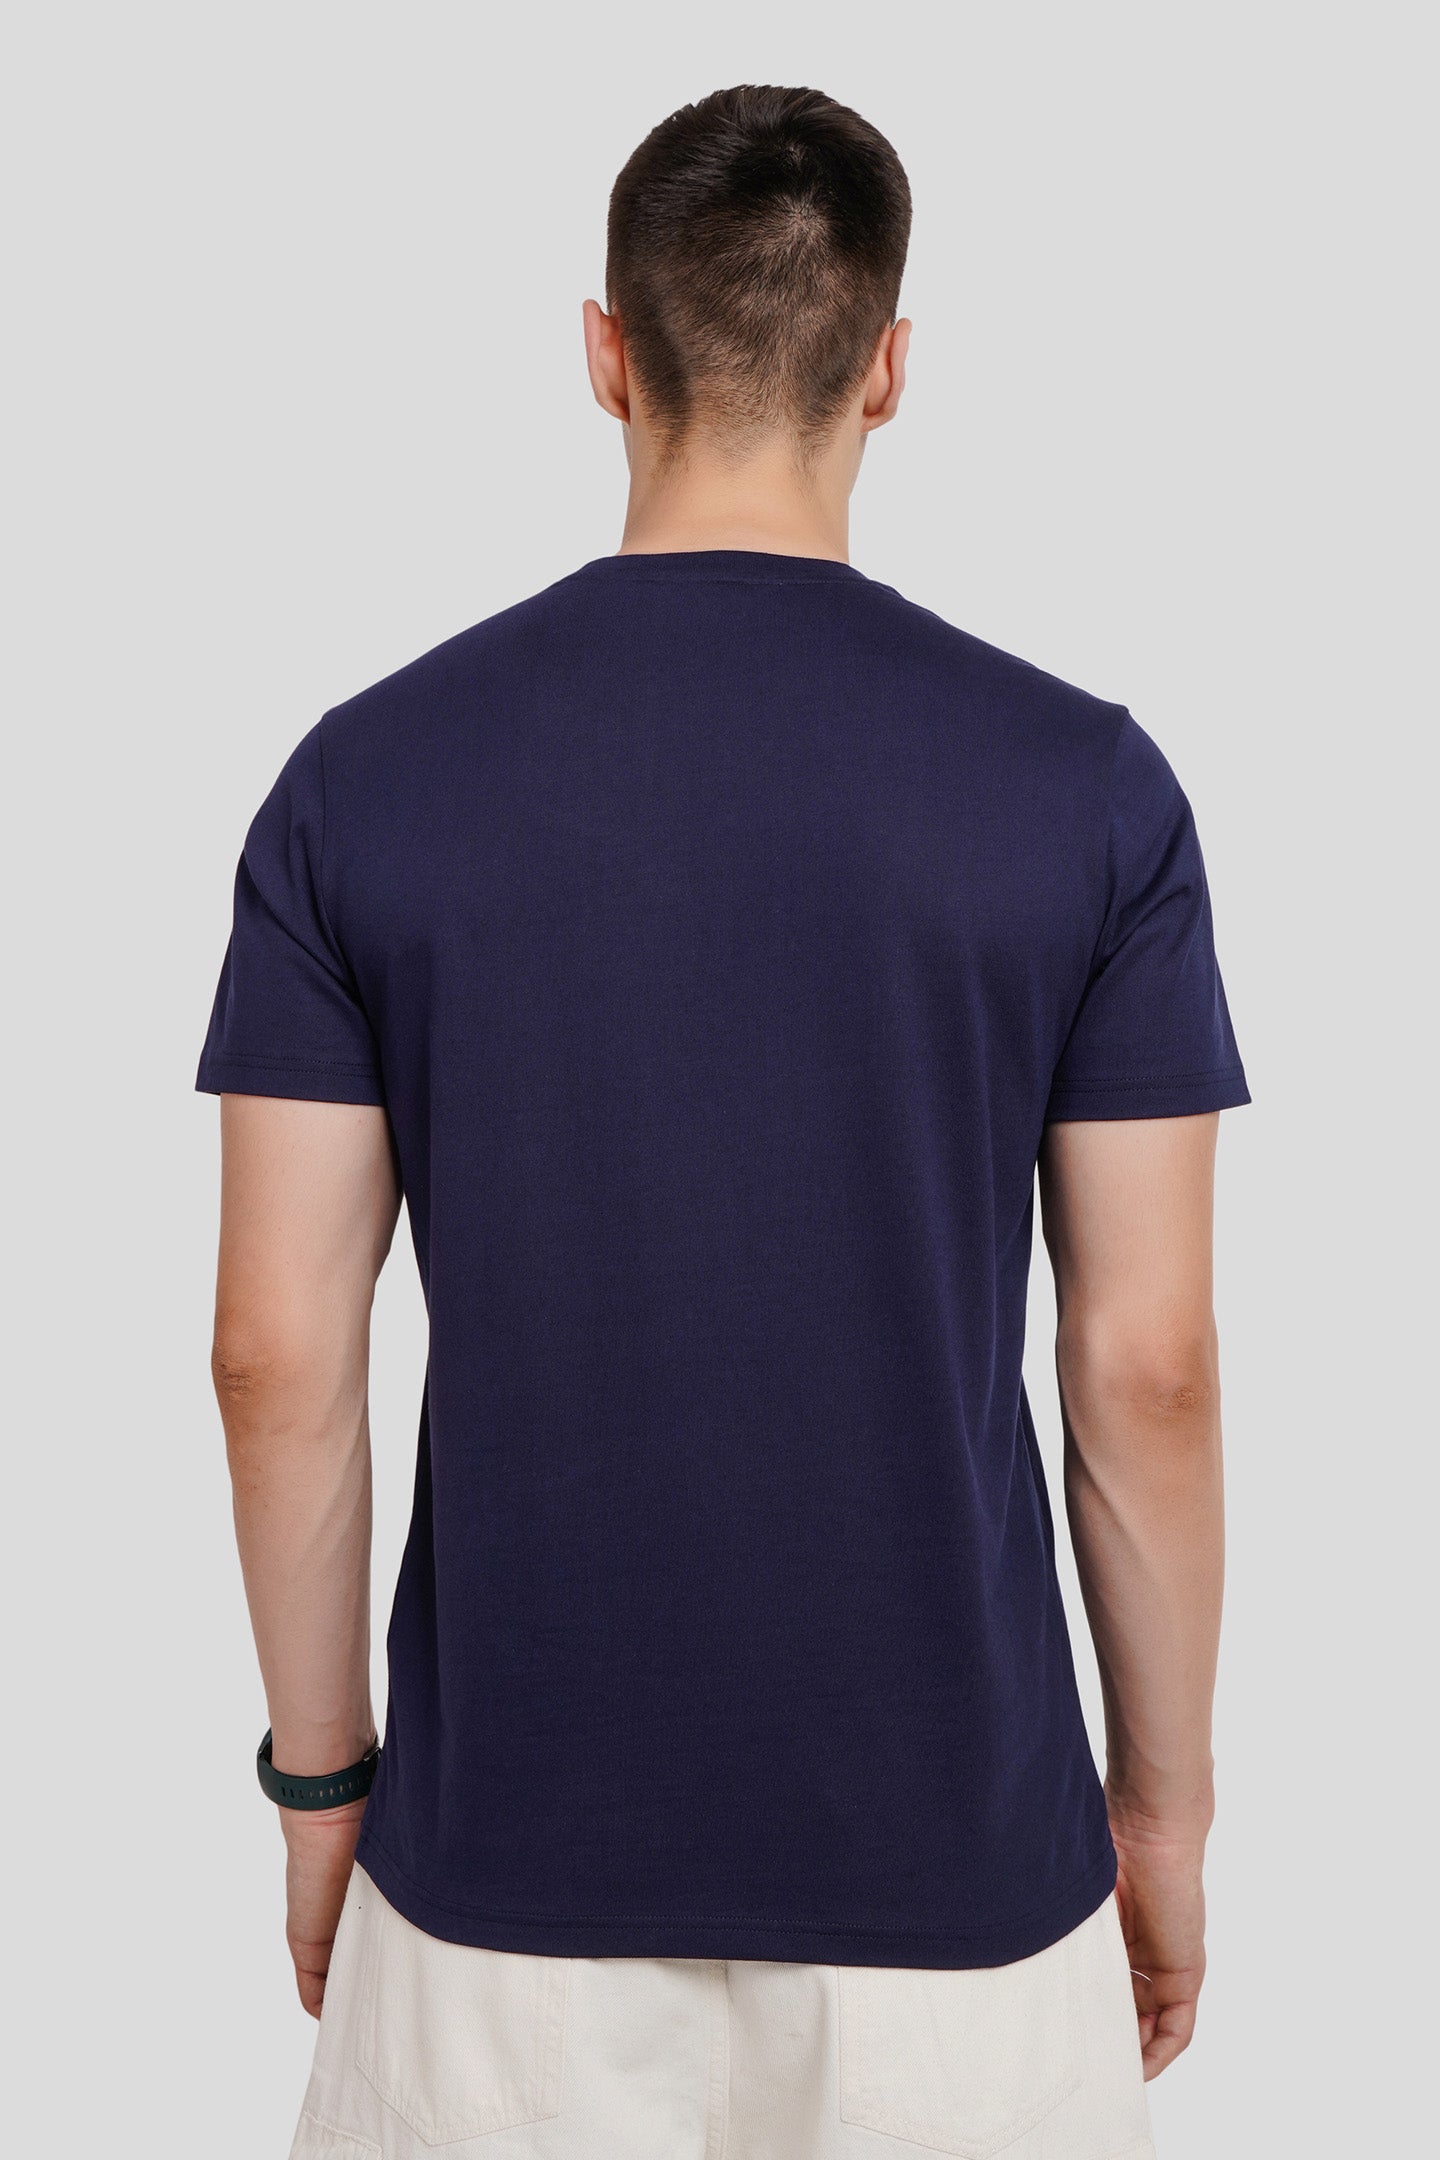 Floral Navy Blue Regular Fit T-Shirt Men Pic 2